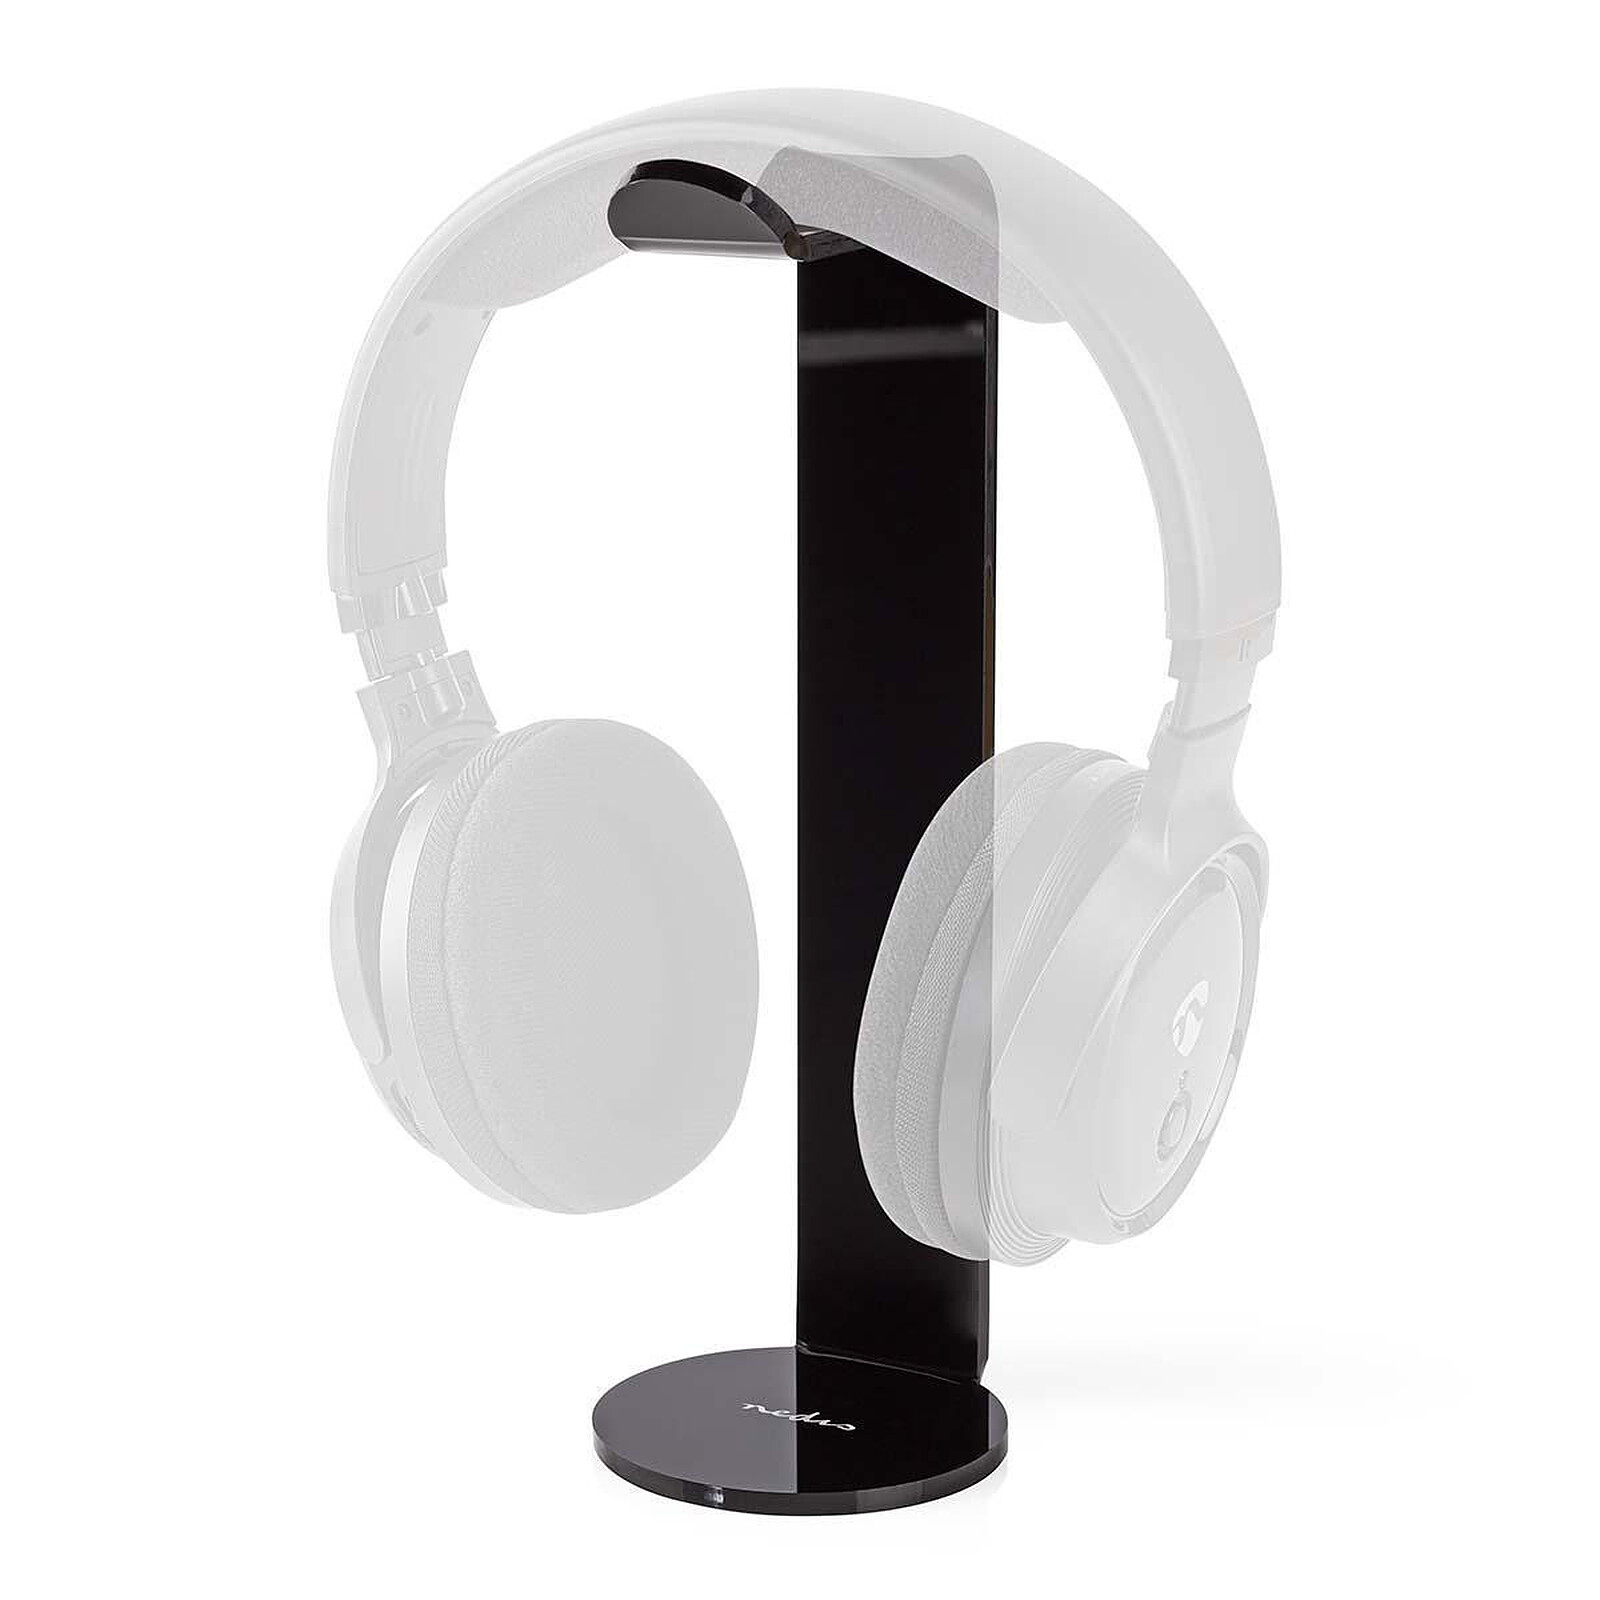 Support de support pour casque, support pour écouteurs avec barre de support  et base en aluminium (argent)